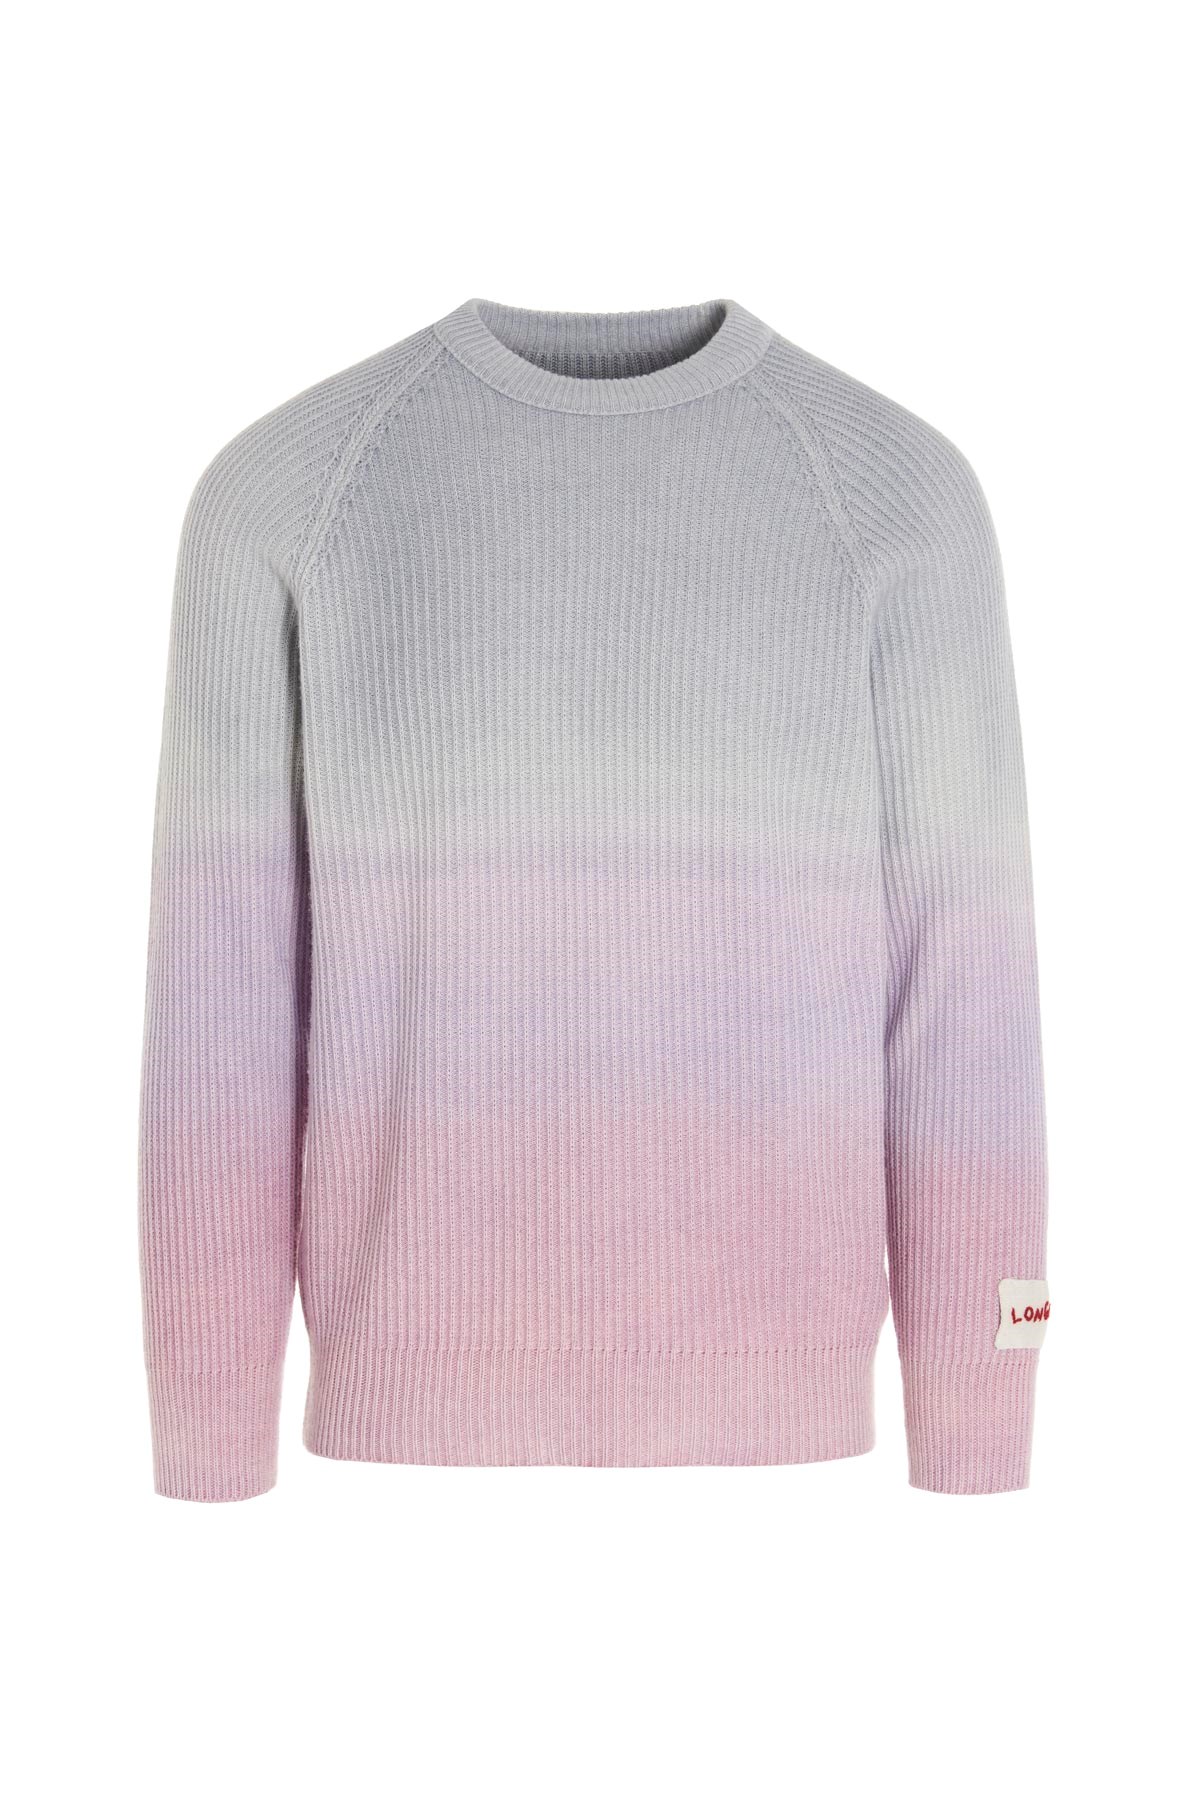 LONGO Tie-Dye Sweater